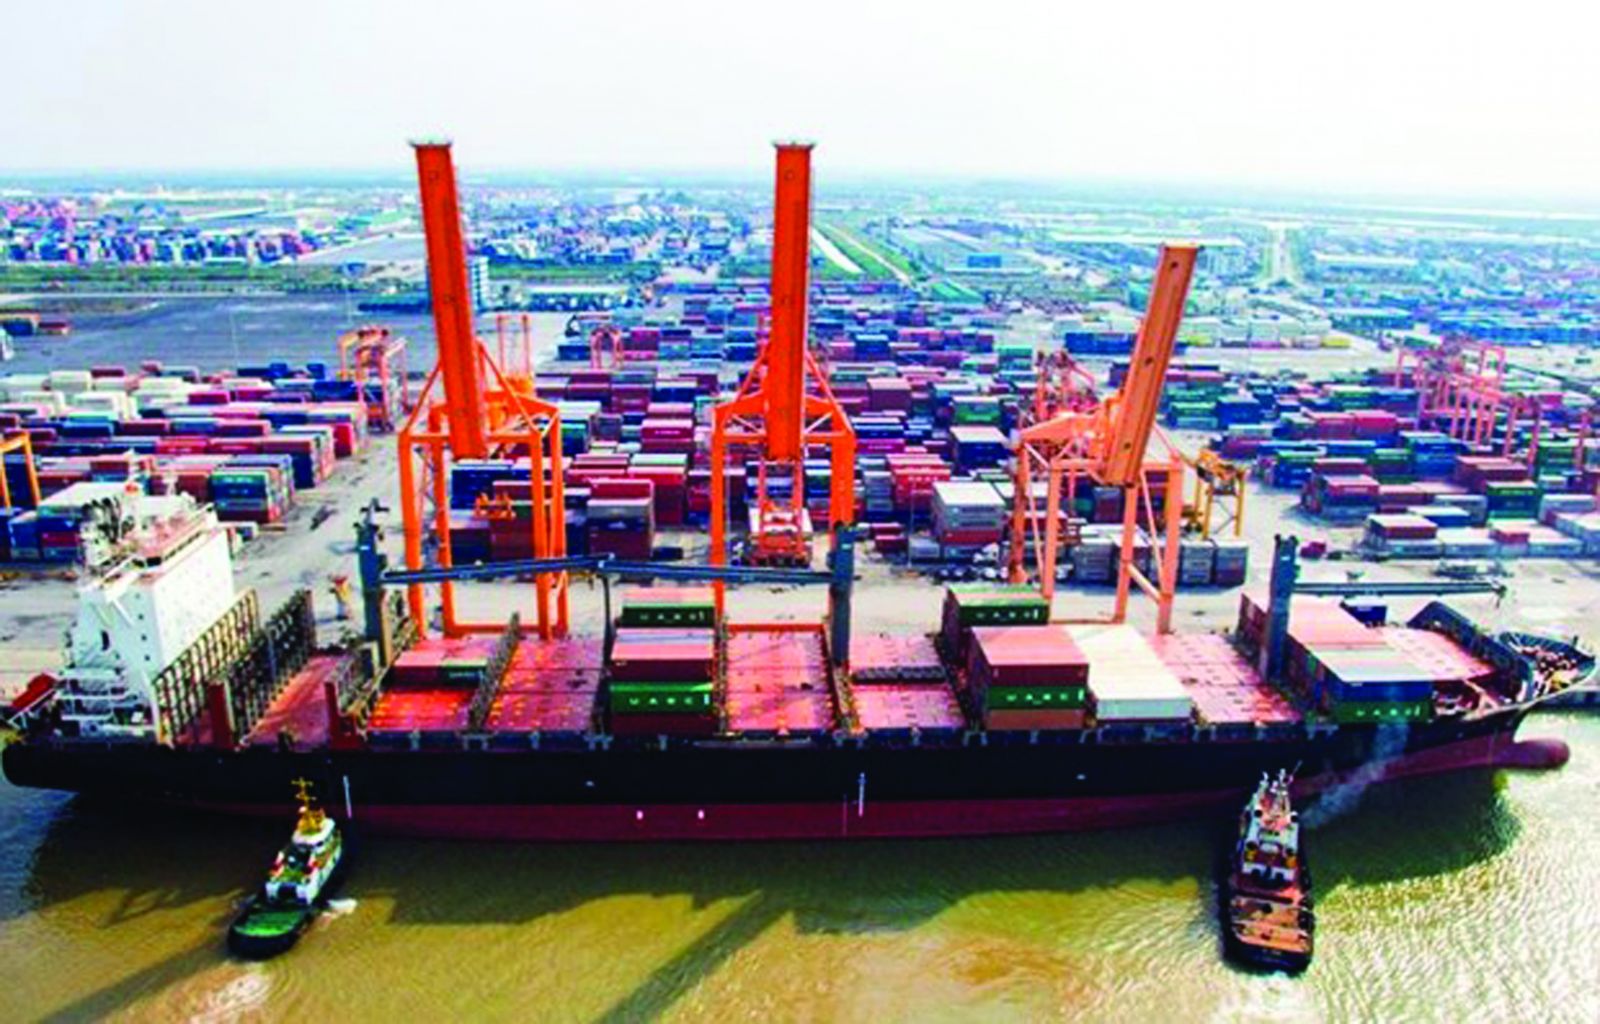  Dịch vụ logistics được xác định là một ngành quan trọng trong cơ cấu tổng thể nền kinh tế quốc dân, đóng vai trò hỗ trợ, kết nối và thúc đẩy phát triển kinh tế - xã hội. (Bốc xếp hàng hóa container tại cảng Hải Phòng.)